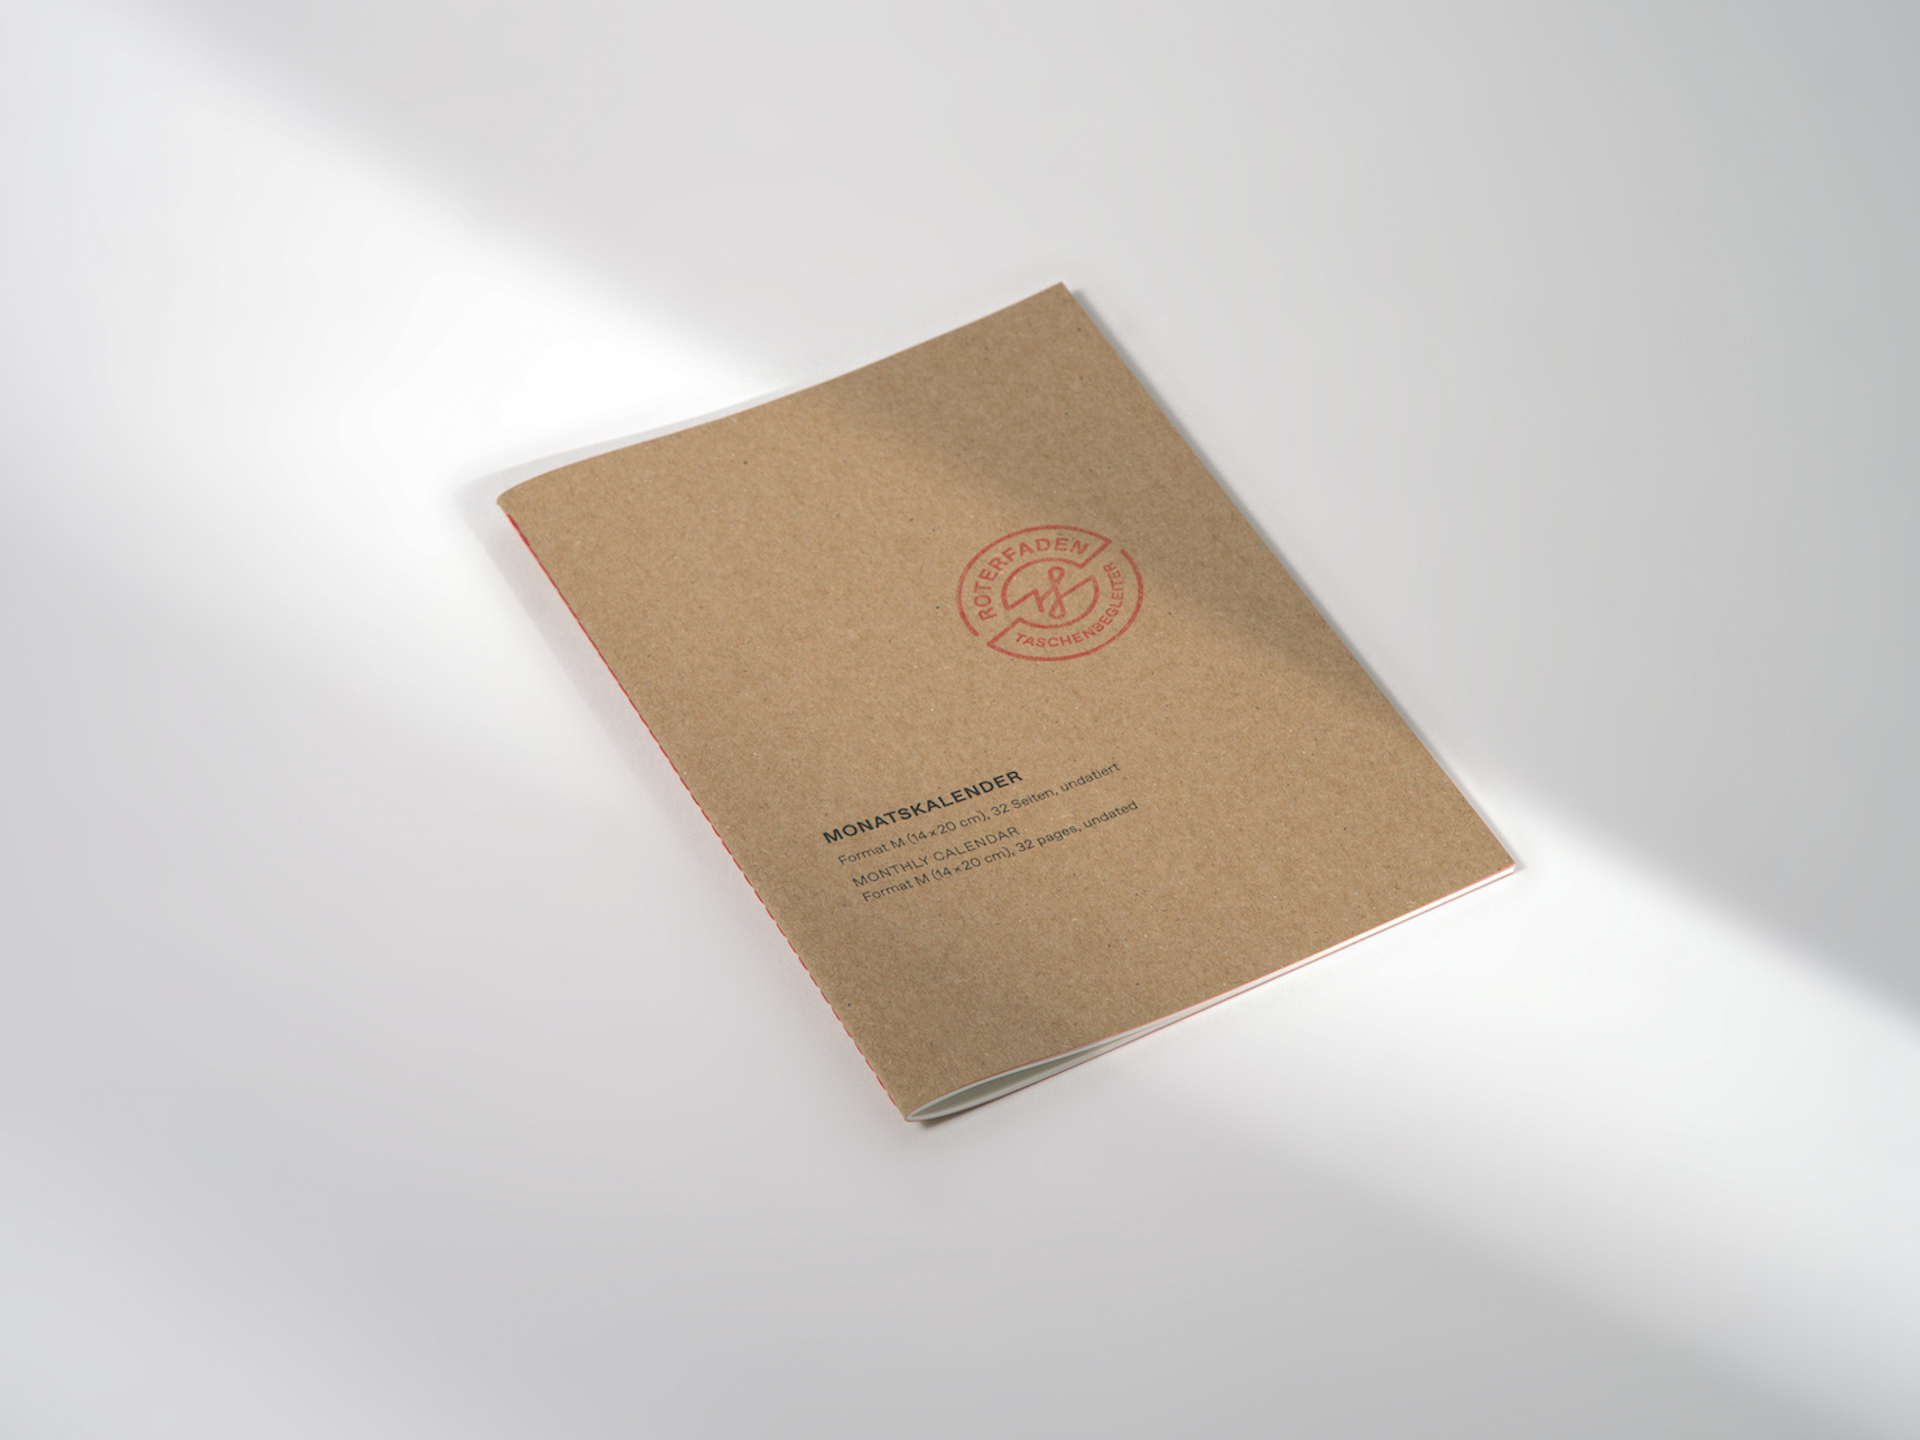 Undatierter Monatskalender im Format M (14 × 20 cm) für A5 mit rotem Faden genäht und festem Einband aus Recyclingkarton. 32 Seiten mit farbigem Vorsatzpapier